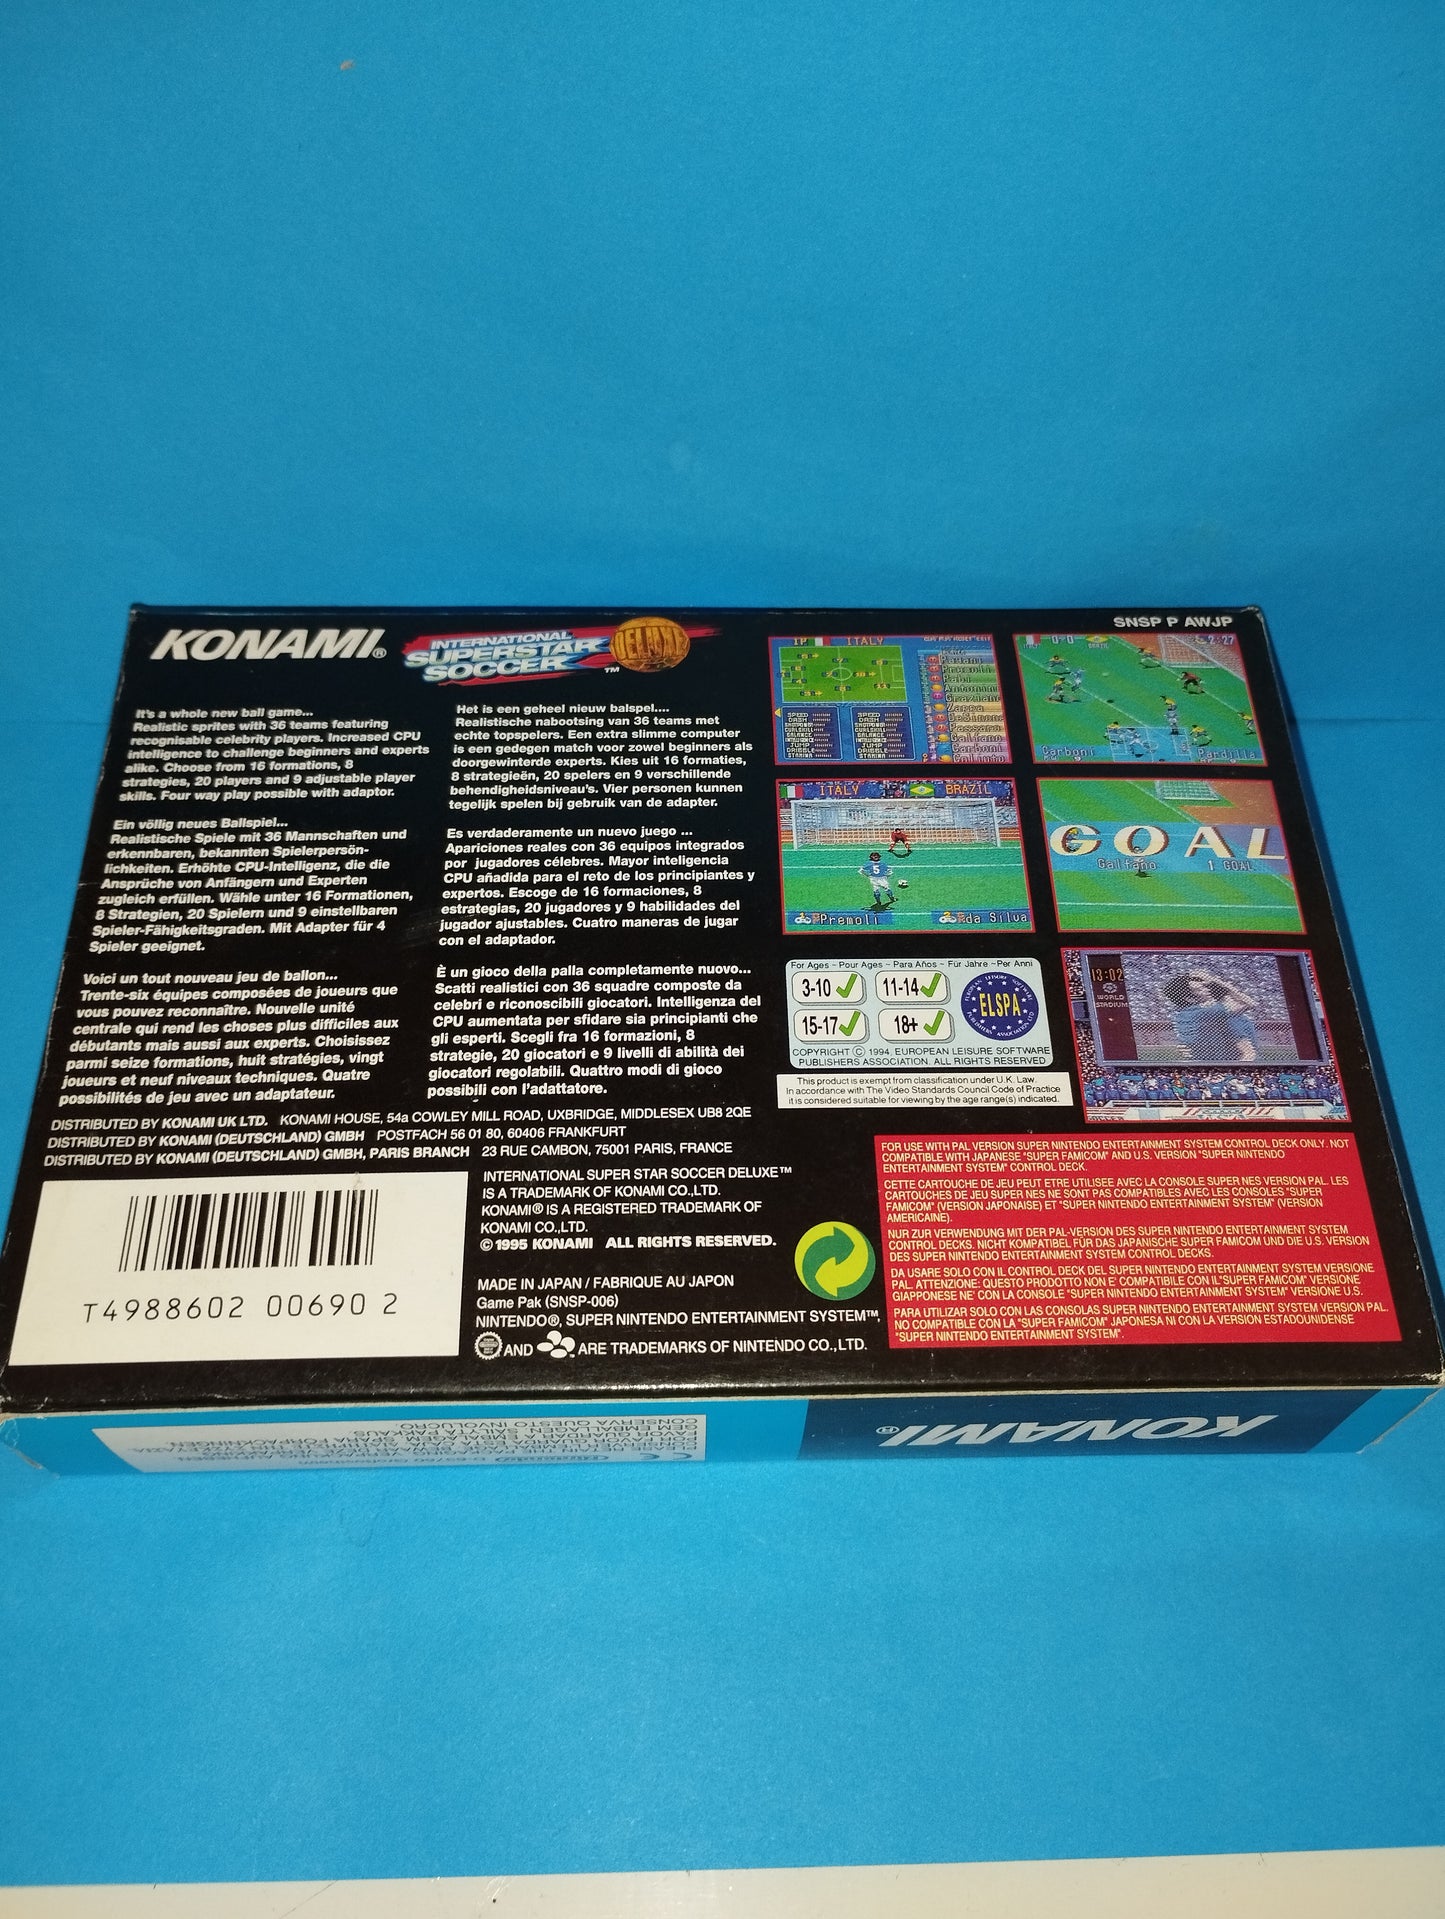 Super Nintendo Game International Superstar Soccer Deluxe
 Published in 1995